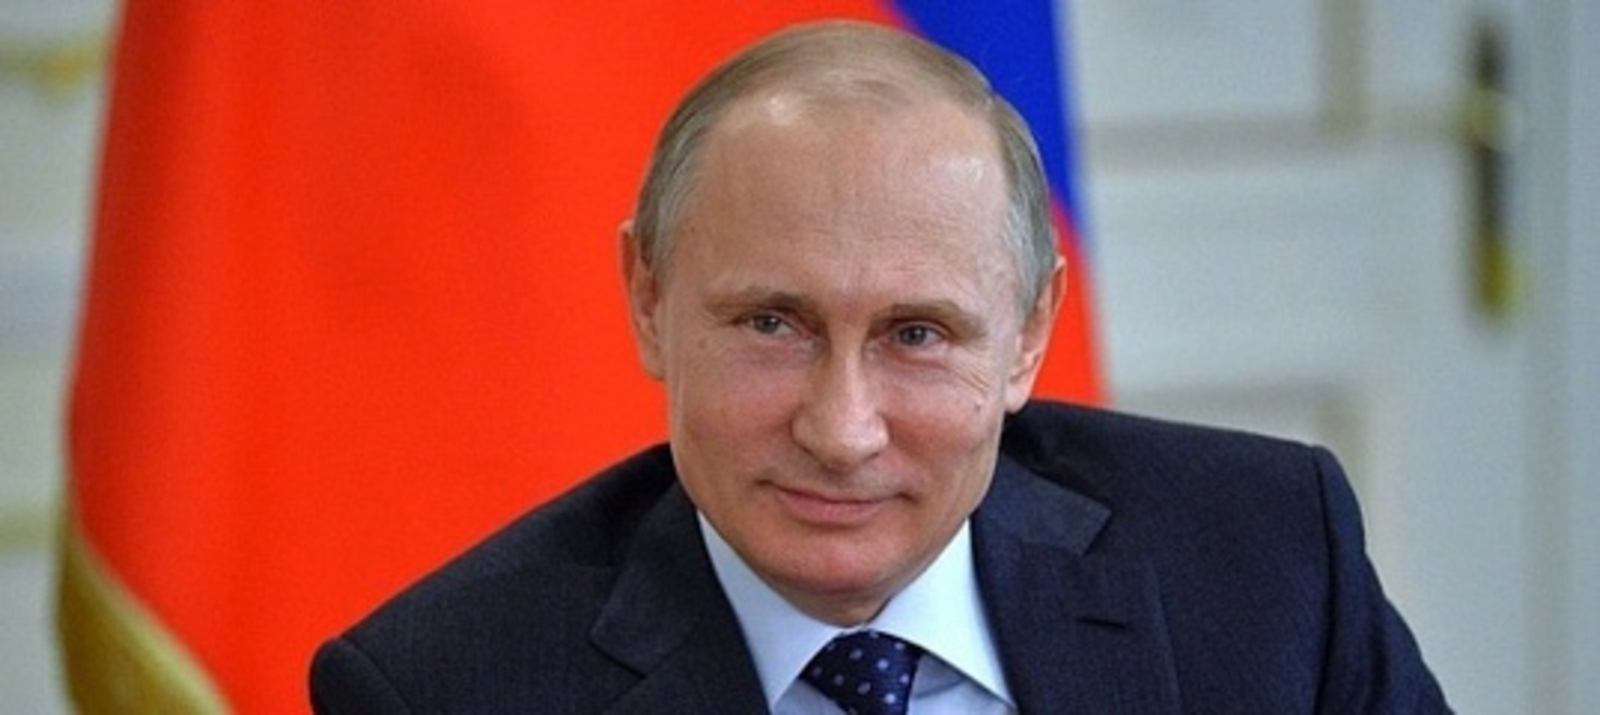 «Это не бездушная машина». Путин оценил работу судебной системы